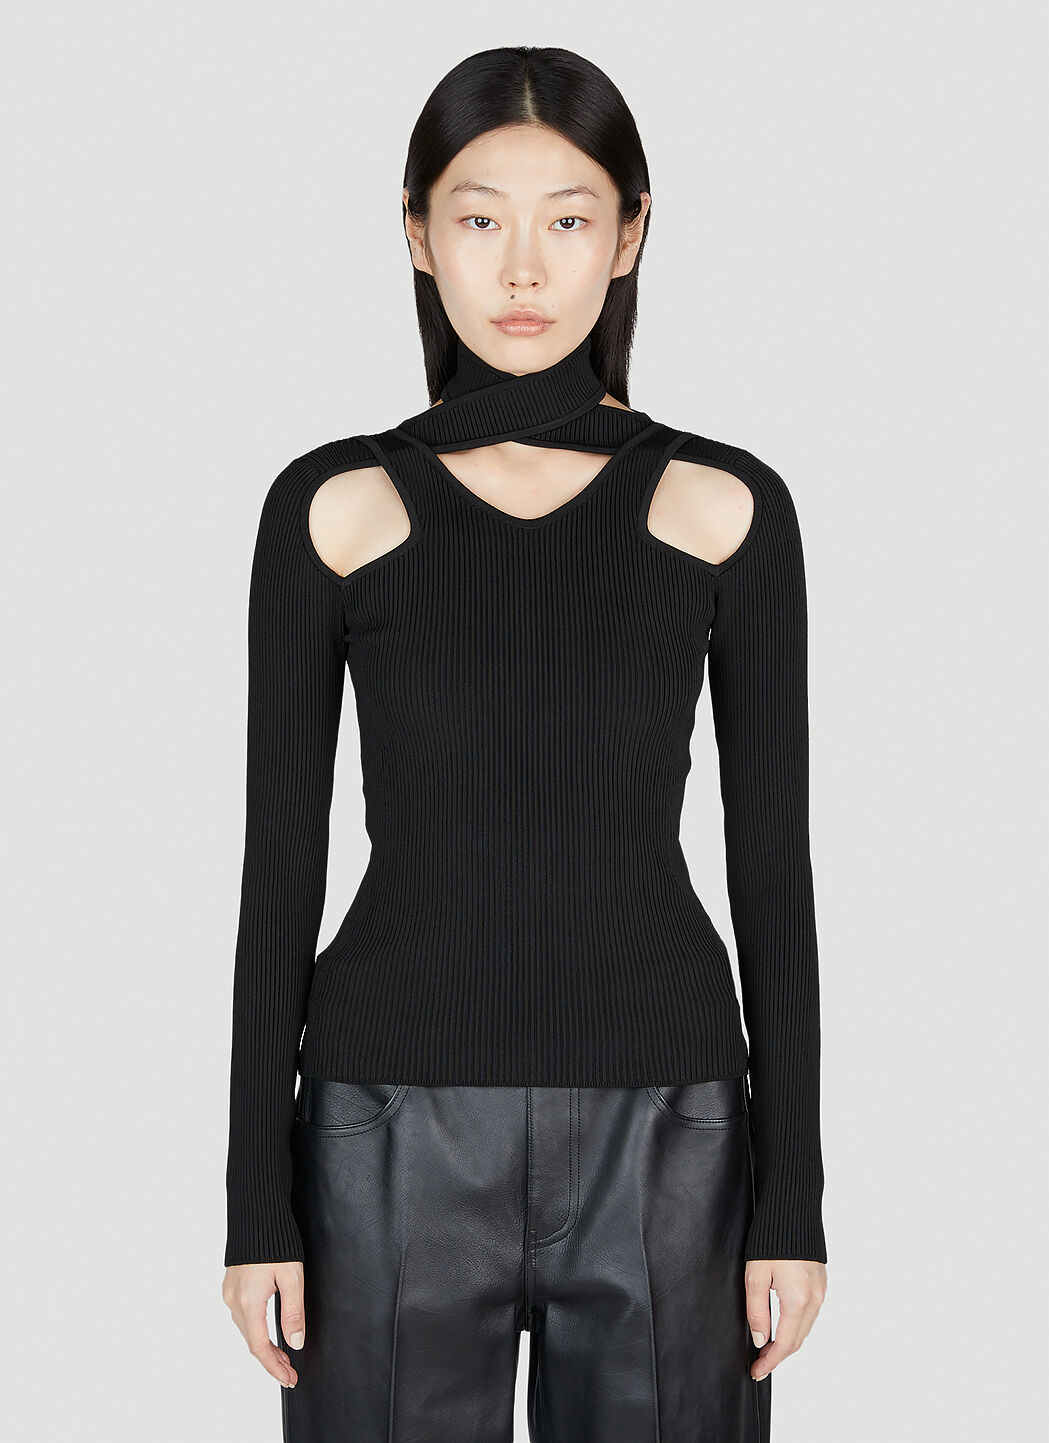 Coperni Cut-Out Knit Sweater Black cpn0255010